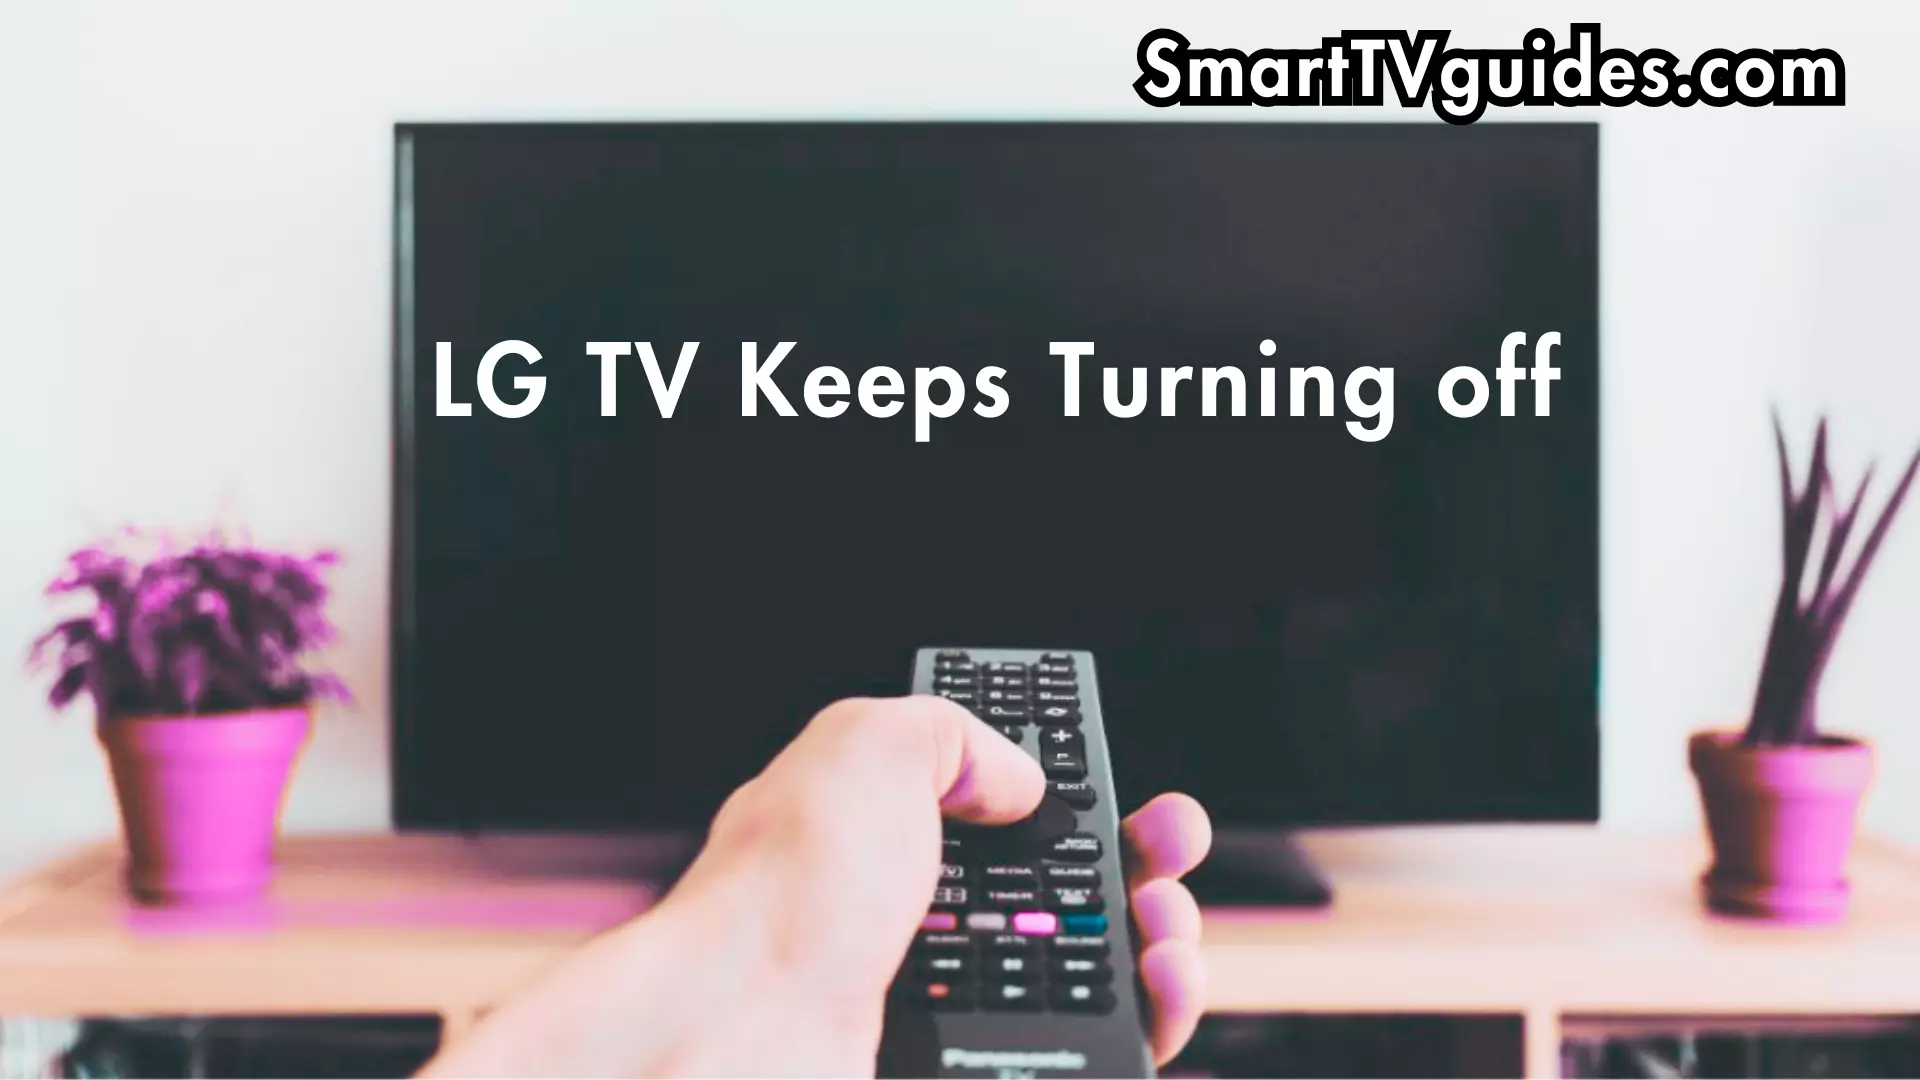 LG TV Keeps Turning off